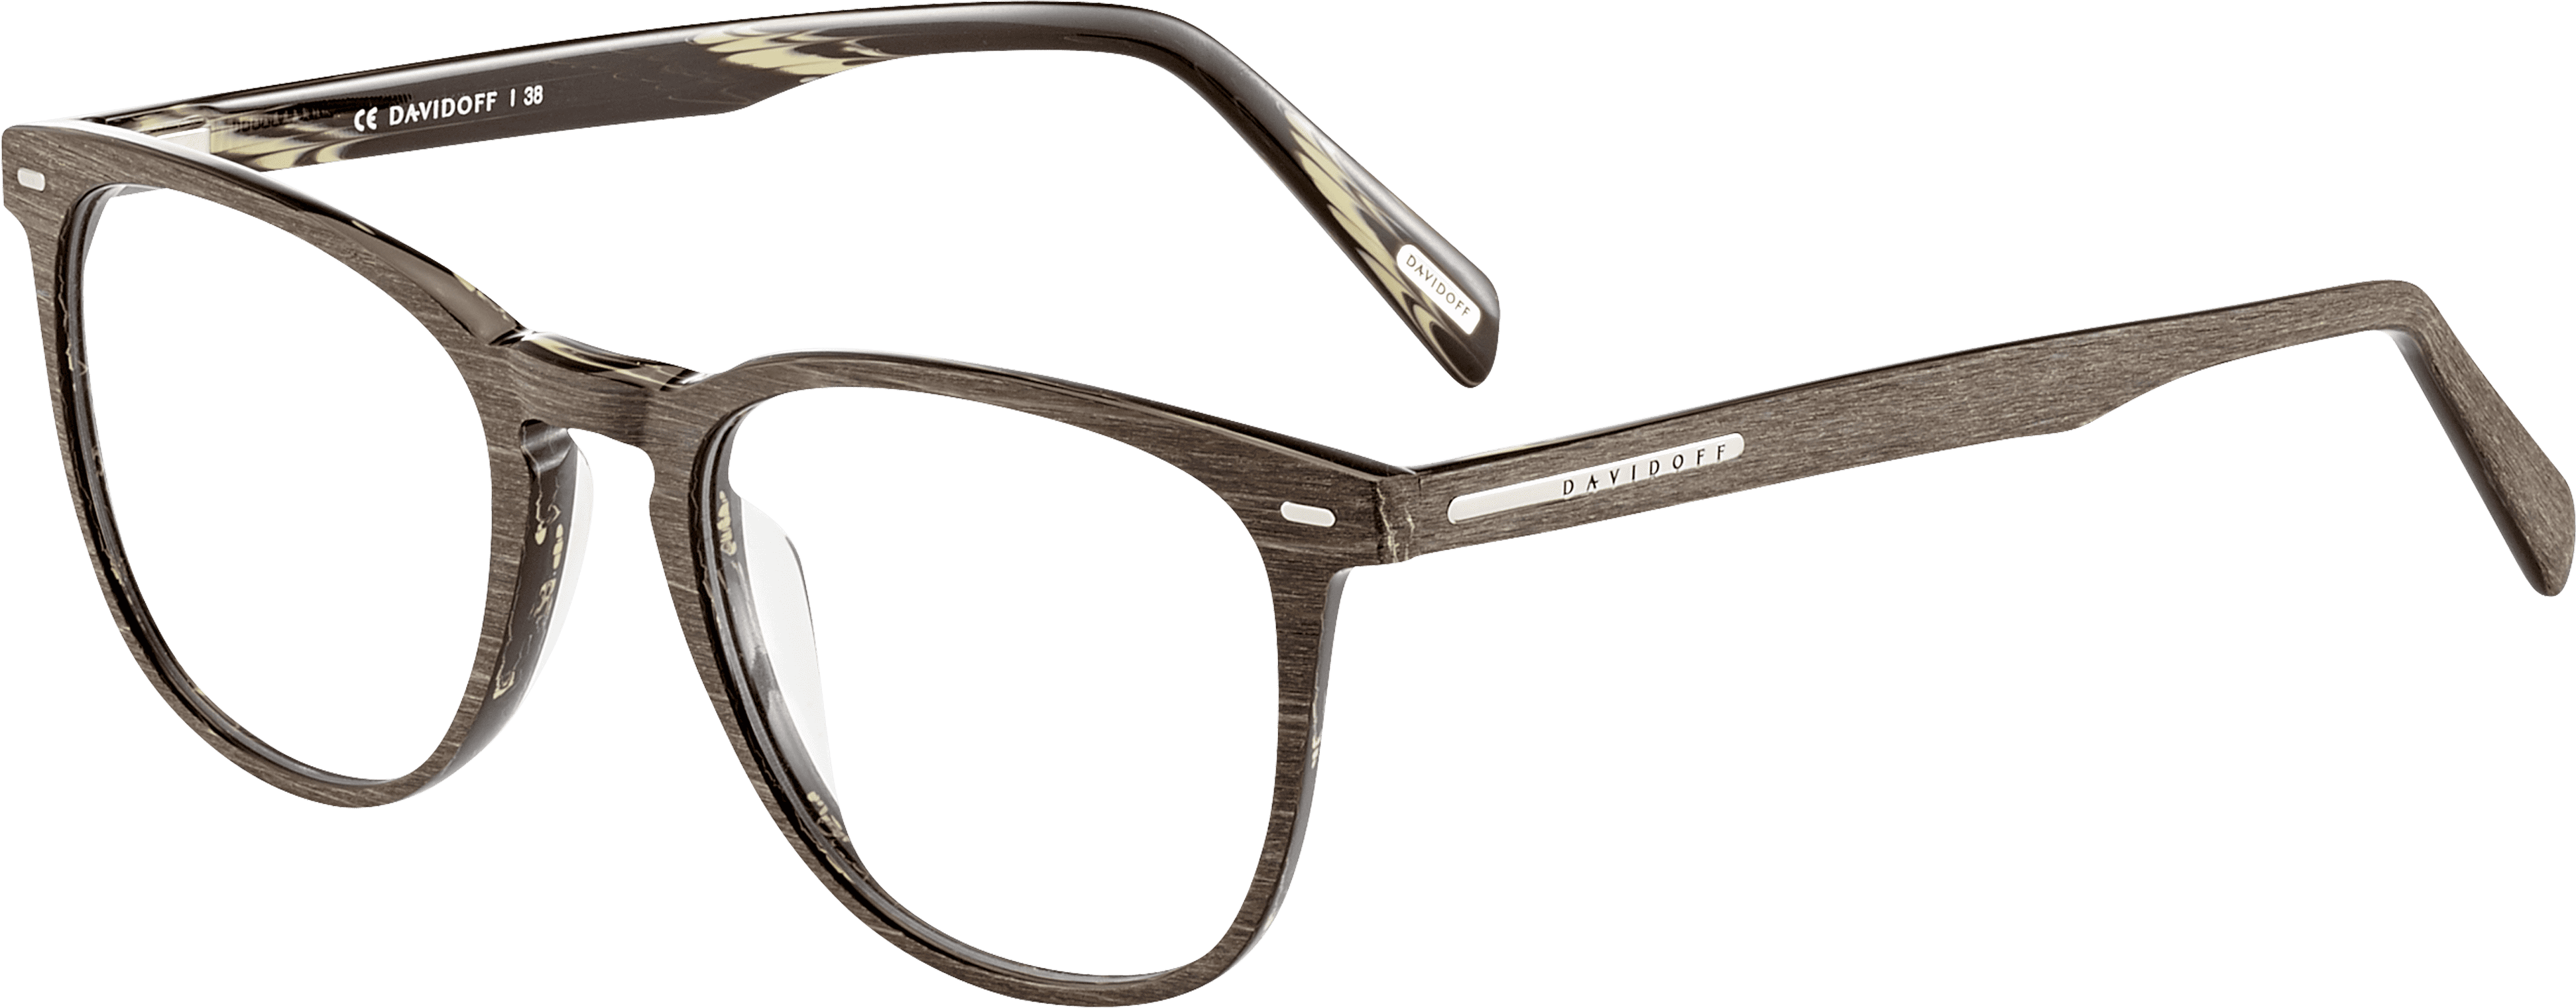 Optical Frame Mod - Spectacles Frame Design (4096x4096), Png Download